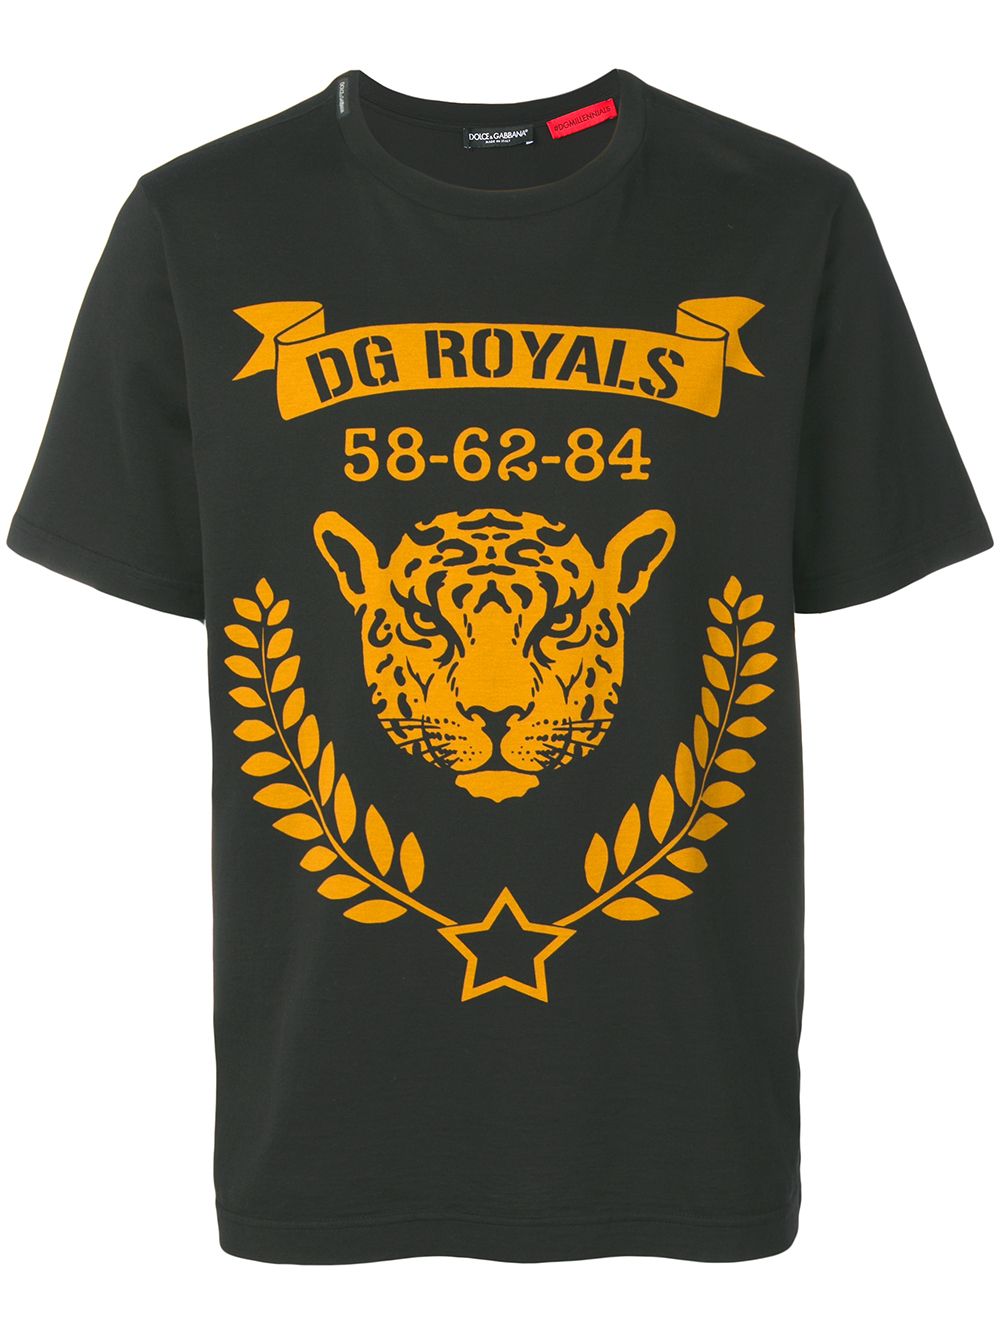 фото Dolce & Gabbana футболка с принтом DG Royals